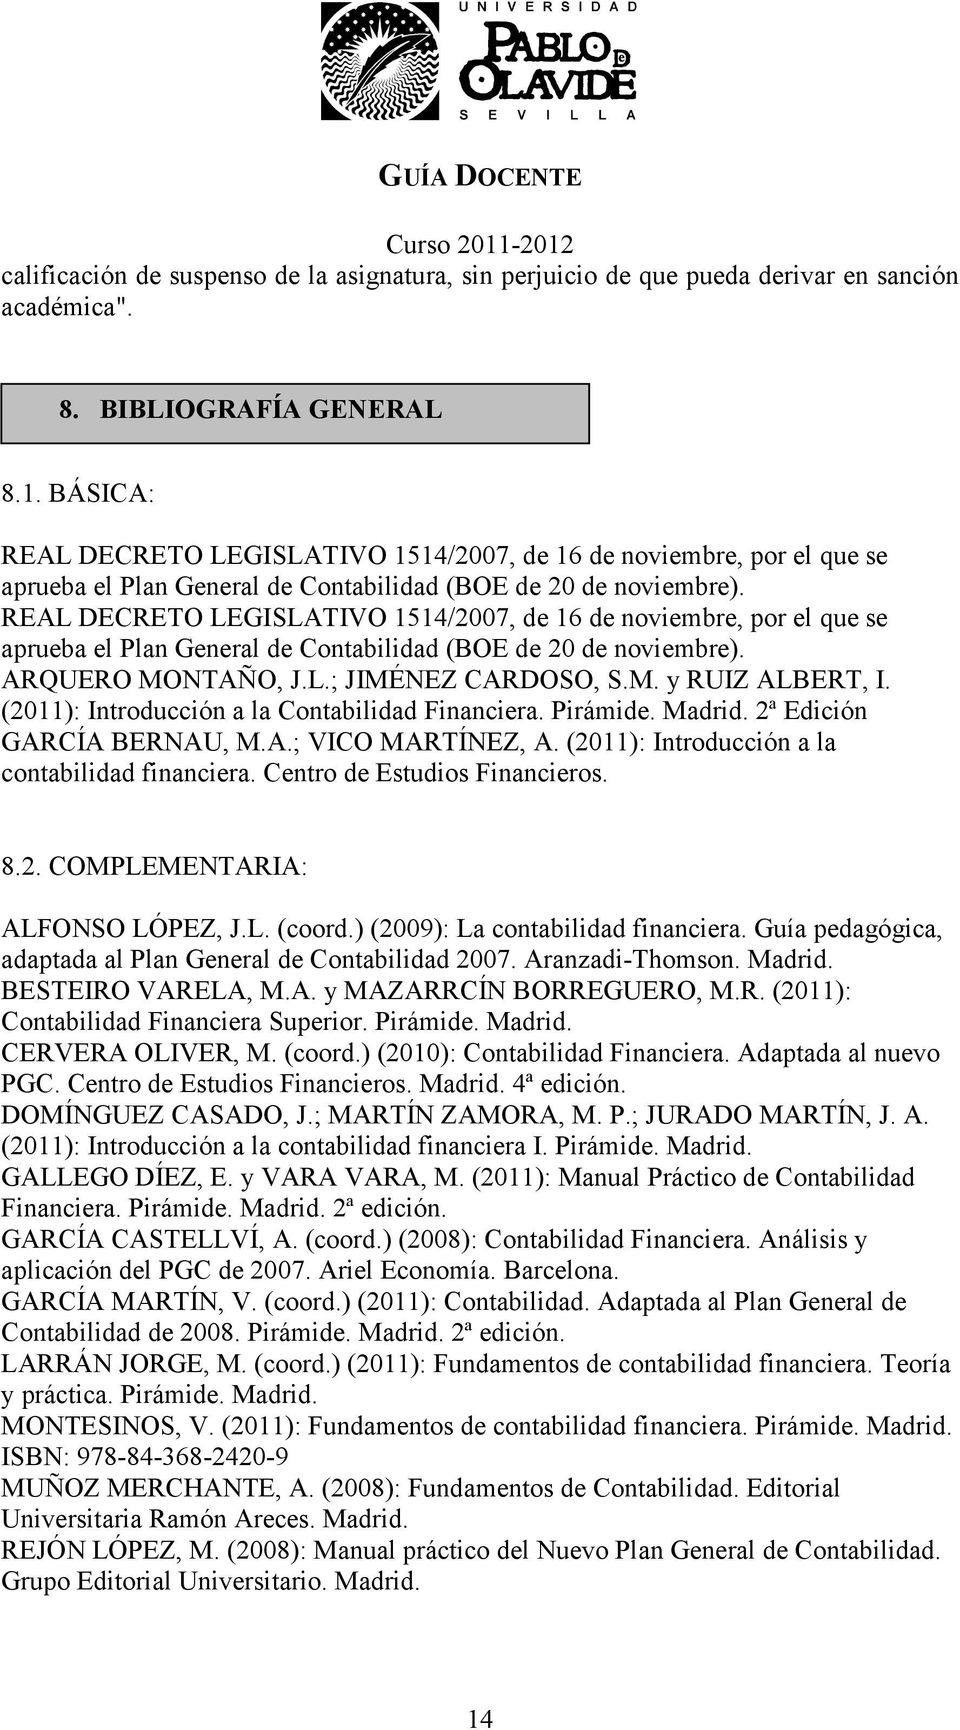 REAL DECRETO LEGISLATIVO 1514/2007, de 16 de noviembre, por el que se aprueba el Plan General de Contabilidad (BOE de 20 de noviembre). ARQUERO MONTAÑO, J.L.; JIMÉNEZ CARDOSO, S.M. y RUIZ ALBERT, I.